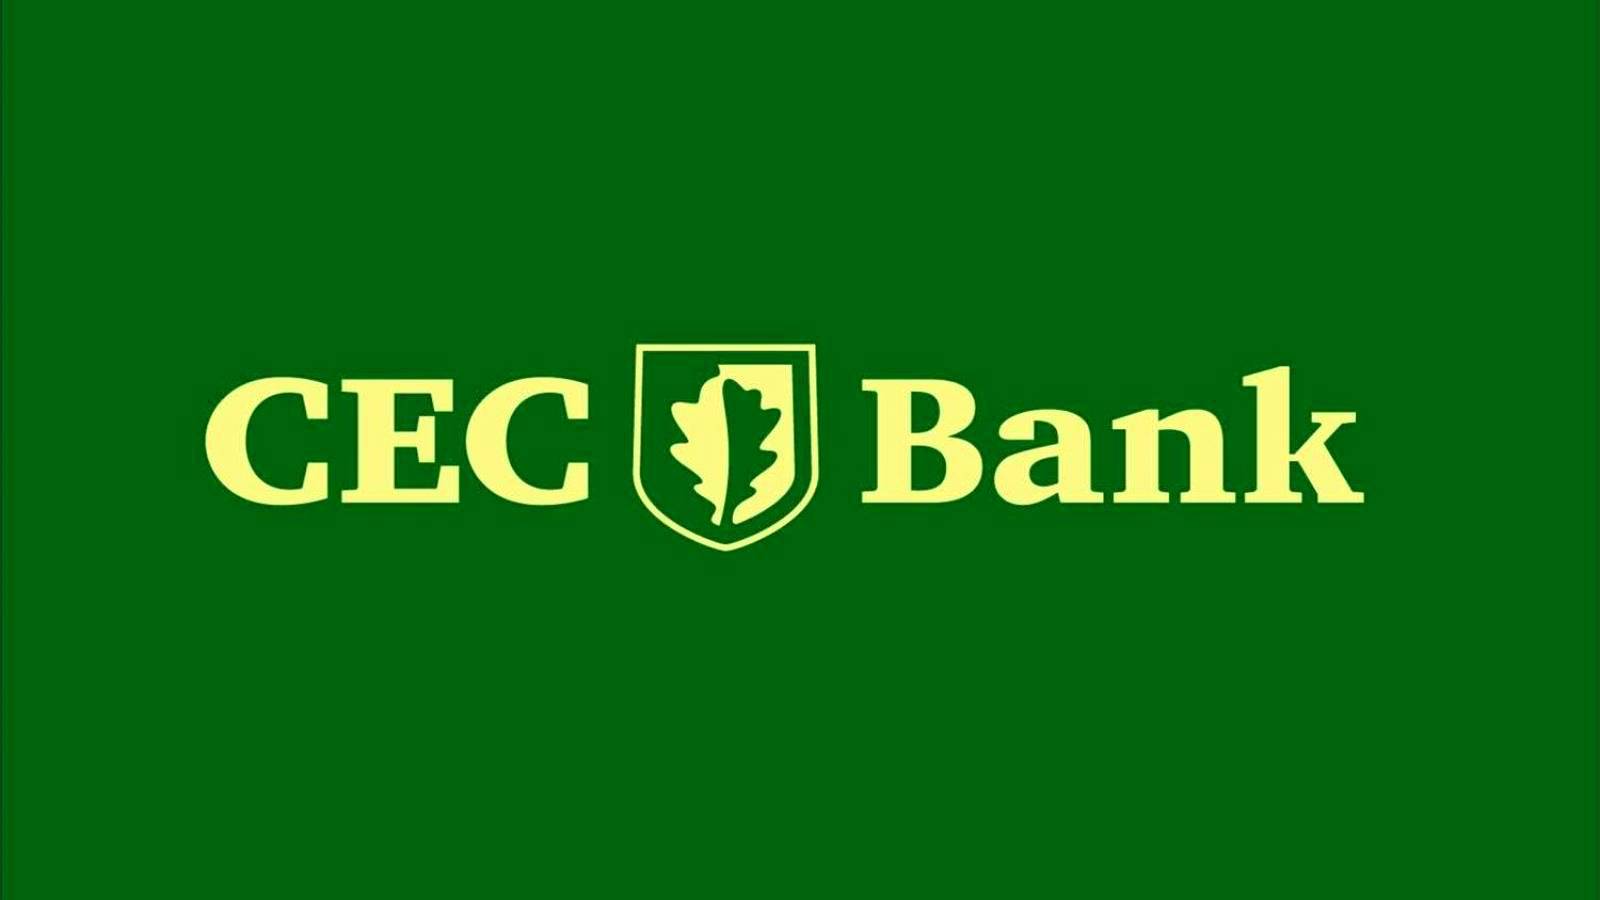 CEC Bank Decizia IMPORTANTA pentru Clienti Anuntat Oficial